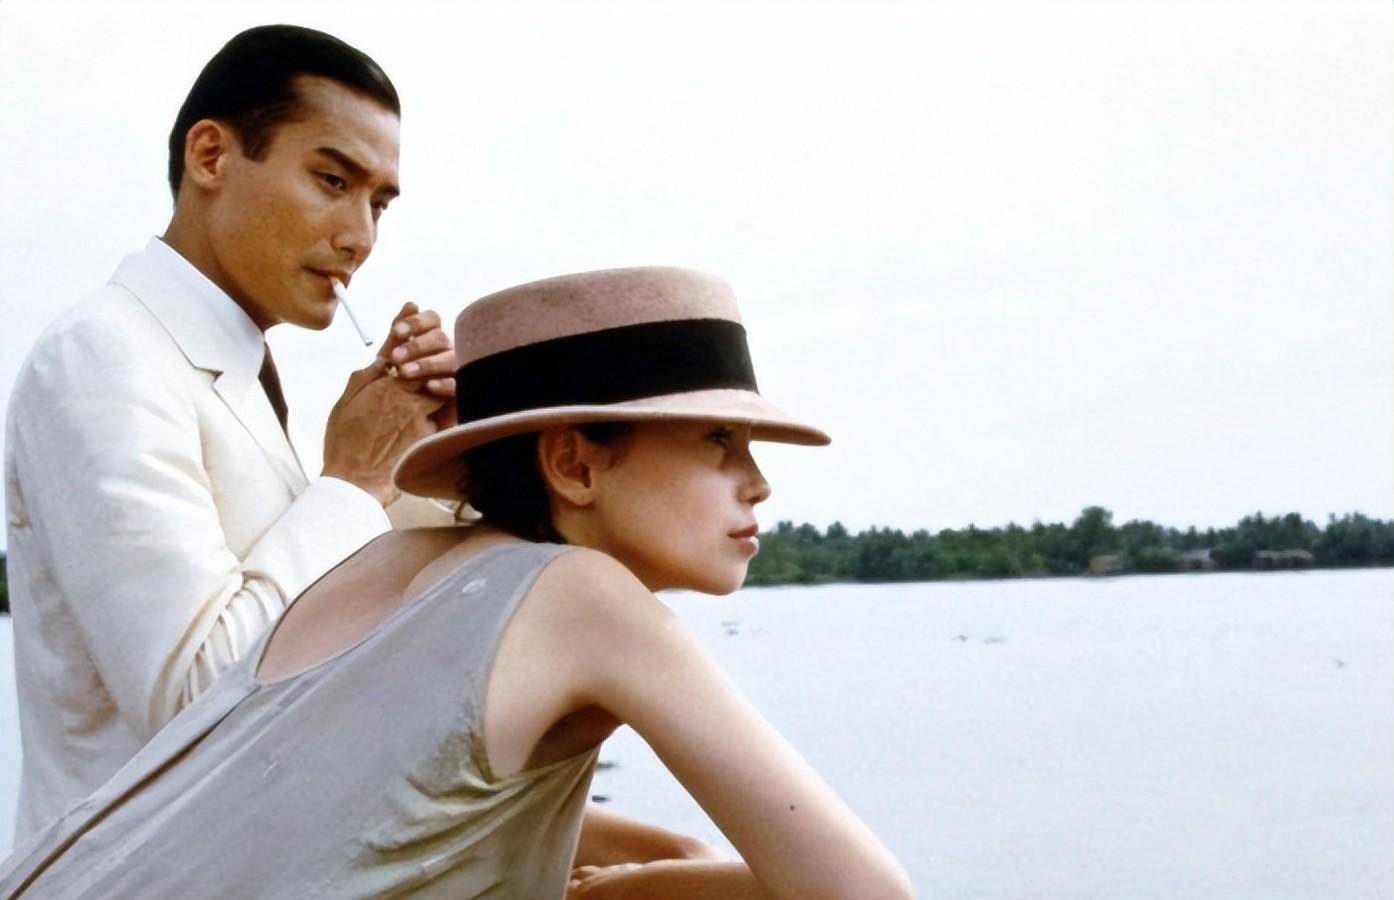 情人号称电影史上最经典爱情电影之一,当时在法国上映造成大轰动,光